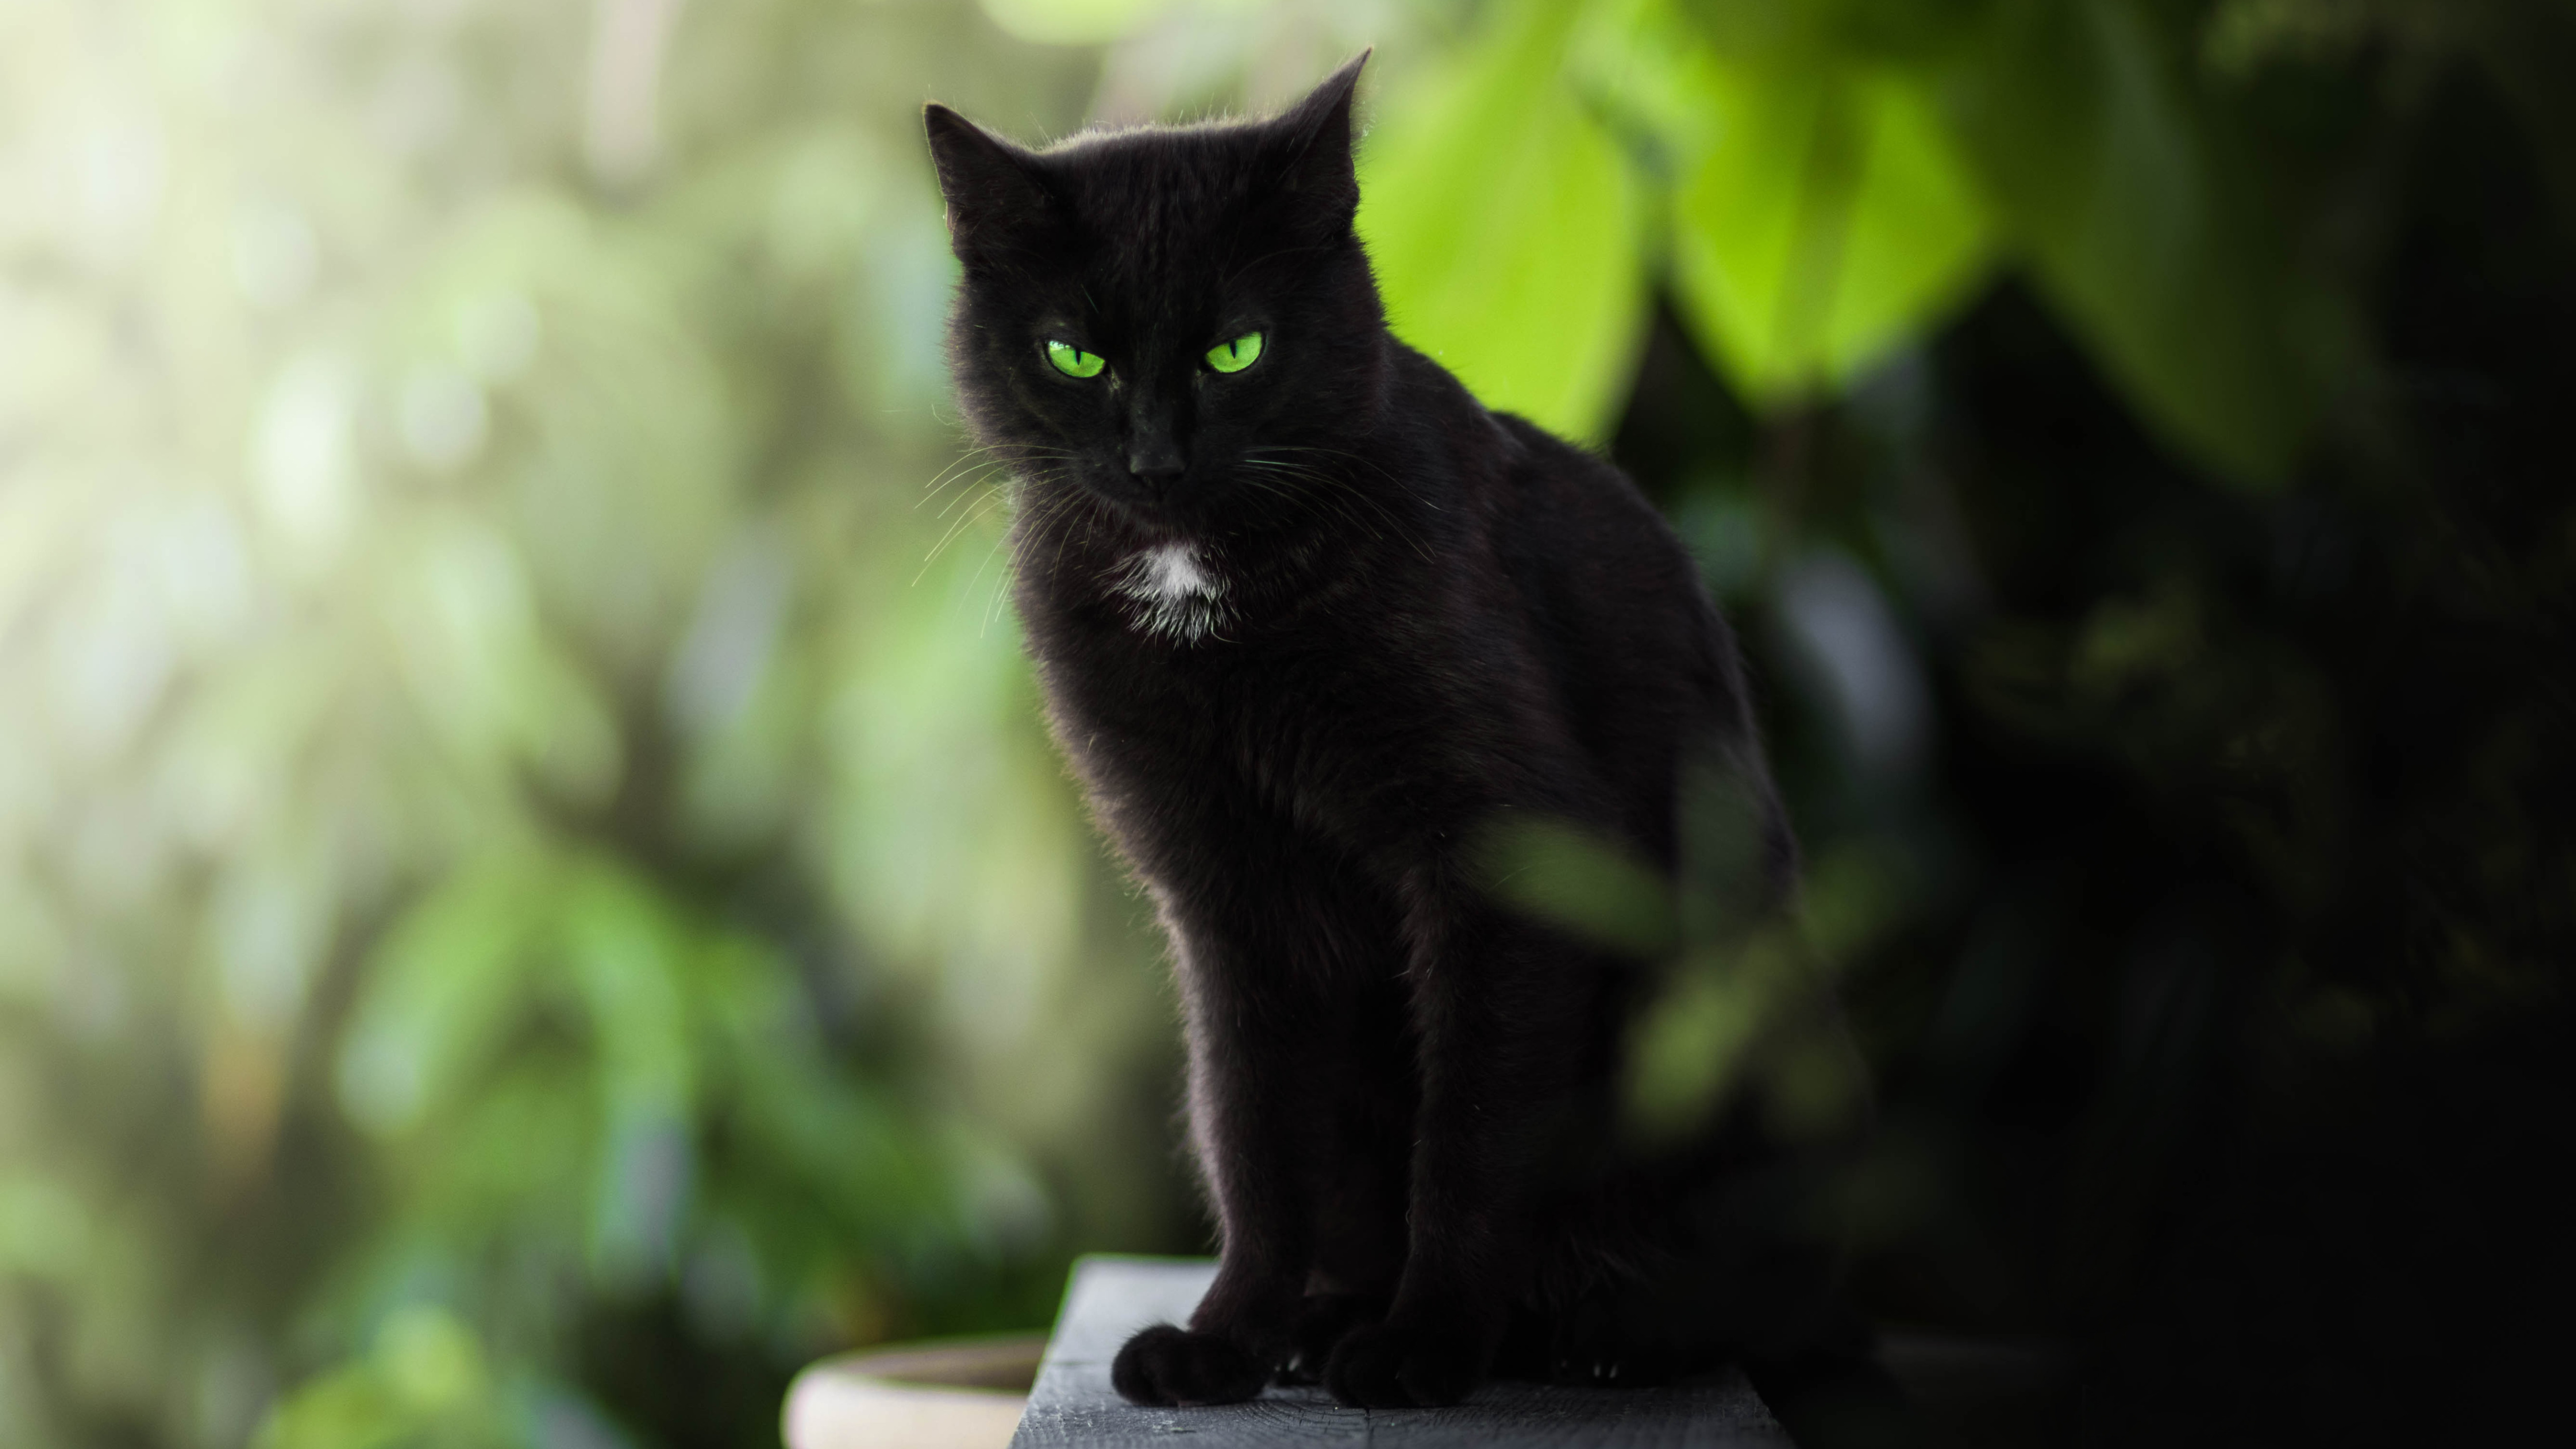 Бомбейская кошка пушистая. Бомбейская кошка длинношерстная. Чёрный кот. Черная кошка с зелеными глазами. Грациозный взгляд